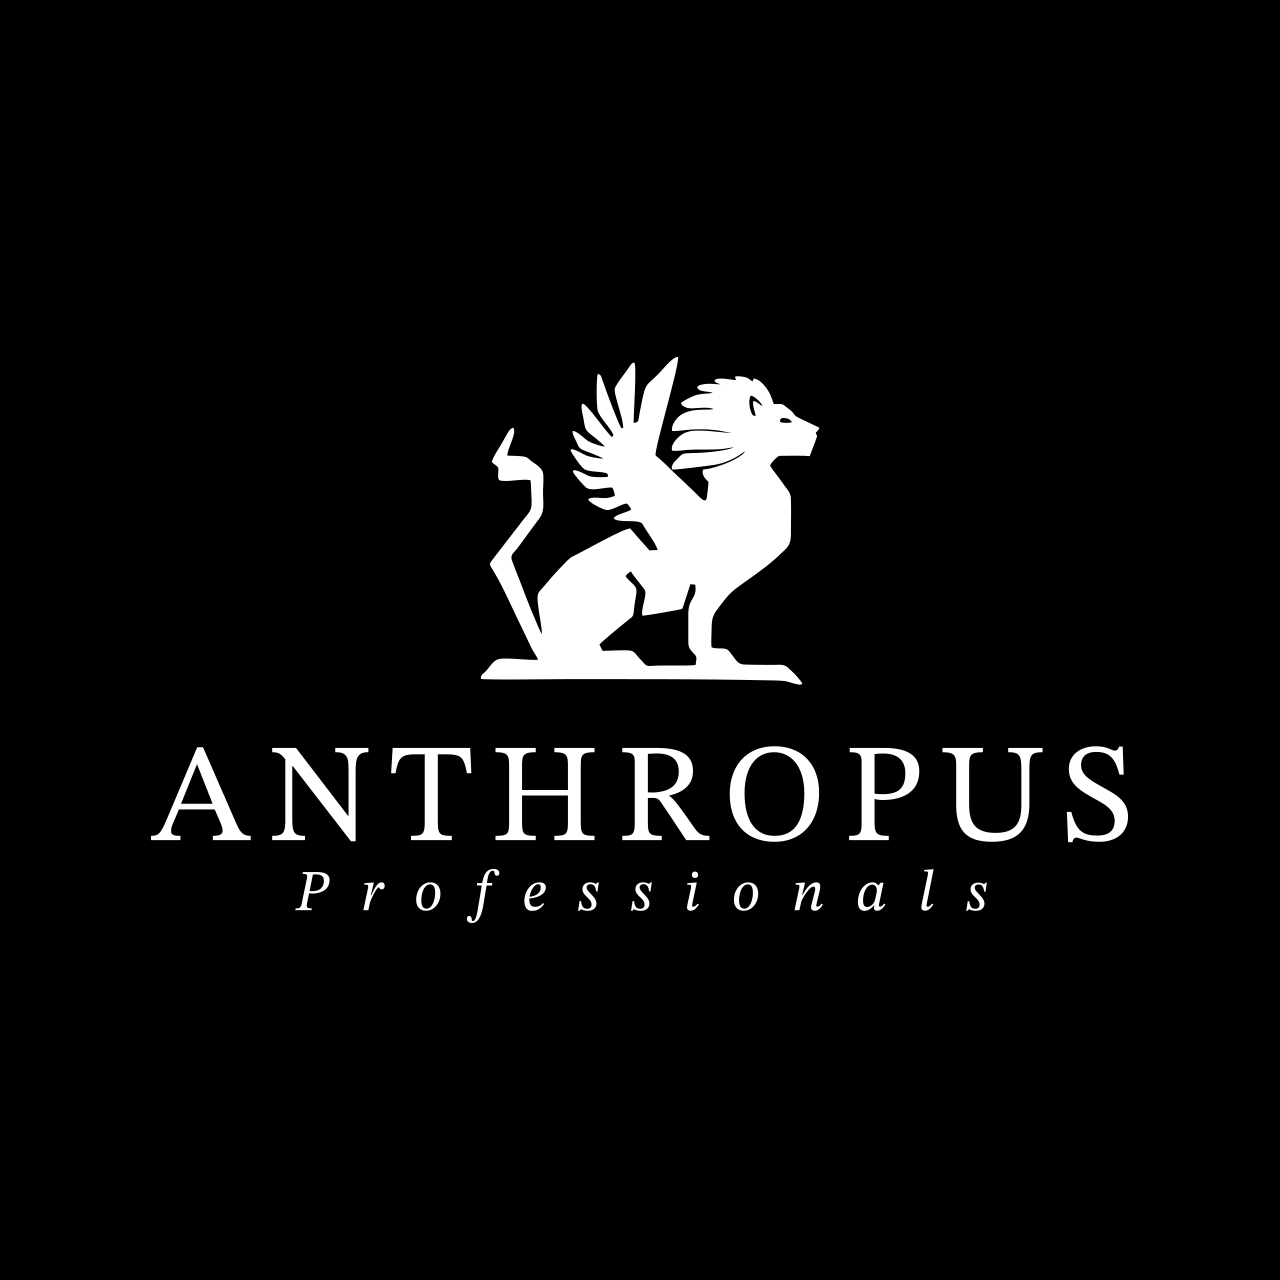 Anthropus Professionals - Projekten, Qualitätsmanagement, Lieferantenentwicklung, Prozessoptimierung, Lean- und Beschaffungsmanagement